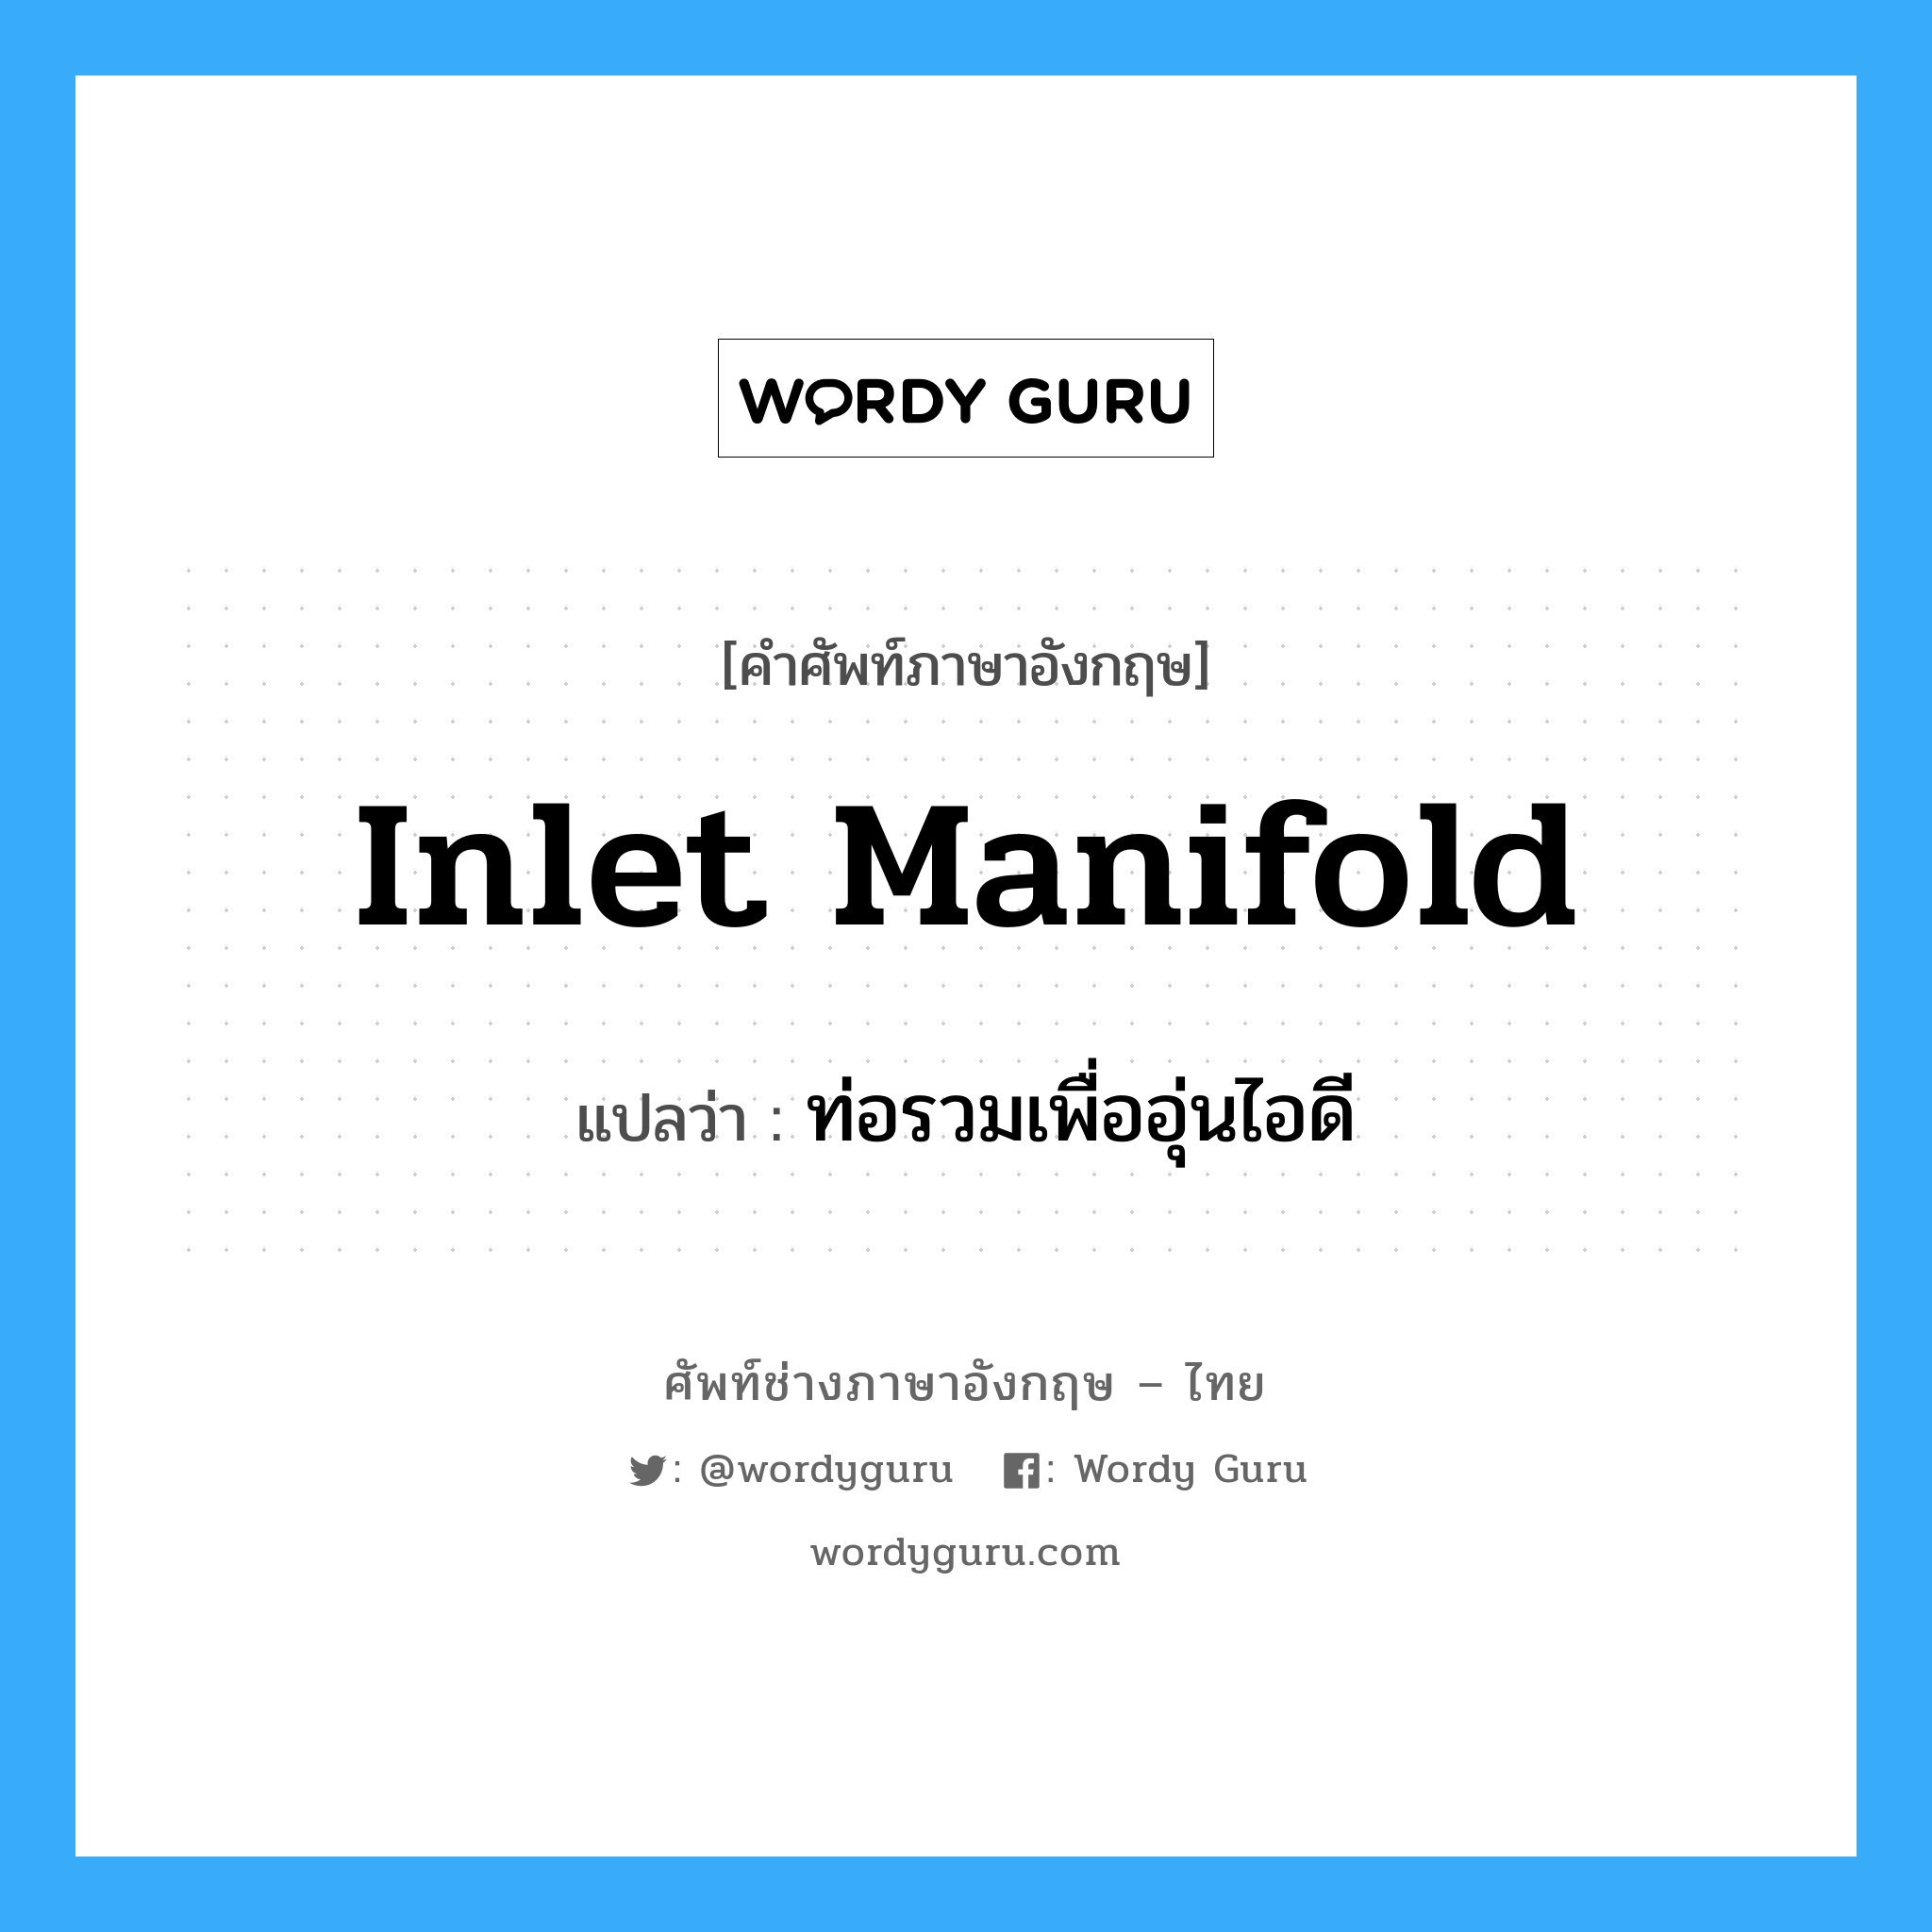 inlet manifold แปลว่า?, คำศัพท์ช่างภาษาอังกฤษ - ไทย inlet manifold คำศัพท์ภาษาอังกฤษ inlet manifold แปลว่า ท่อรวมเพื่ออุ่นไอดี